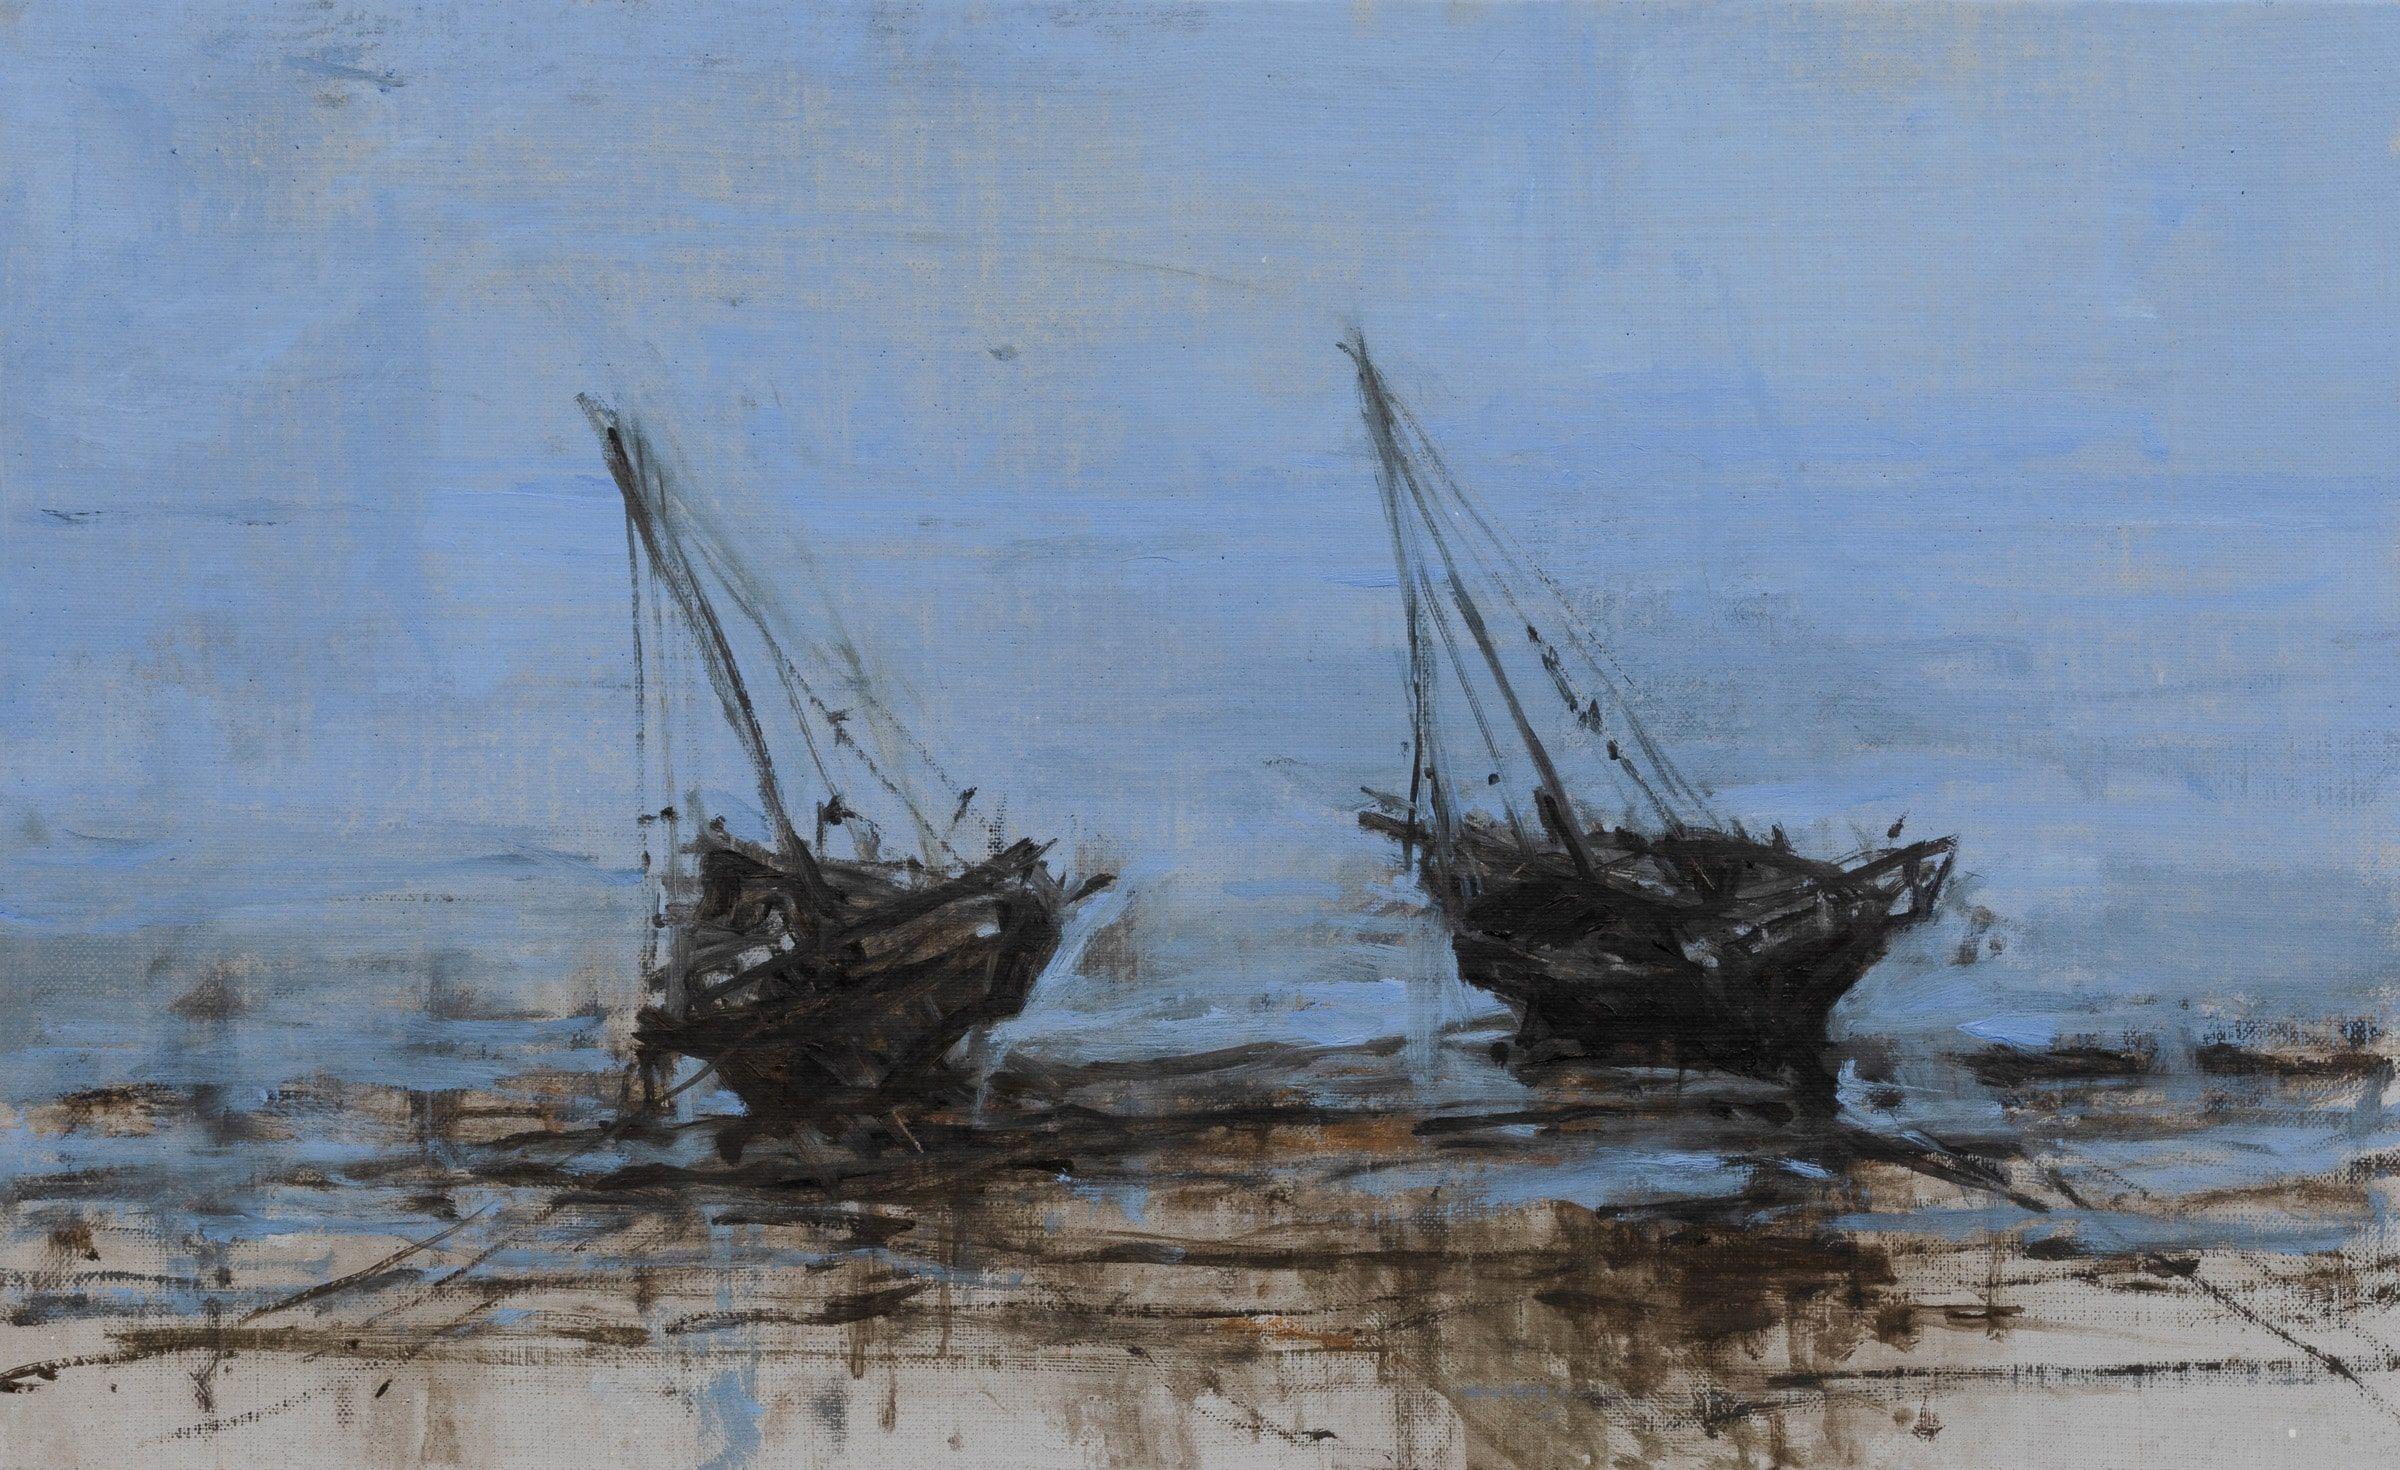 Boat in Dar es Salam n°2 est une peinture unique à l'huile sur toile de l'artiste contemporain espagnol Calo Carratalá, dont les dimensions sont de 36 × 59 cm (14.2 × 23.2 in). 
L'œuvre est signée et accompagnée d'un certificat d'authenticité.

Le